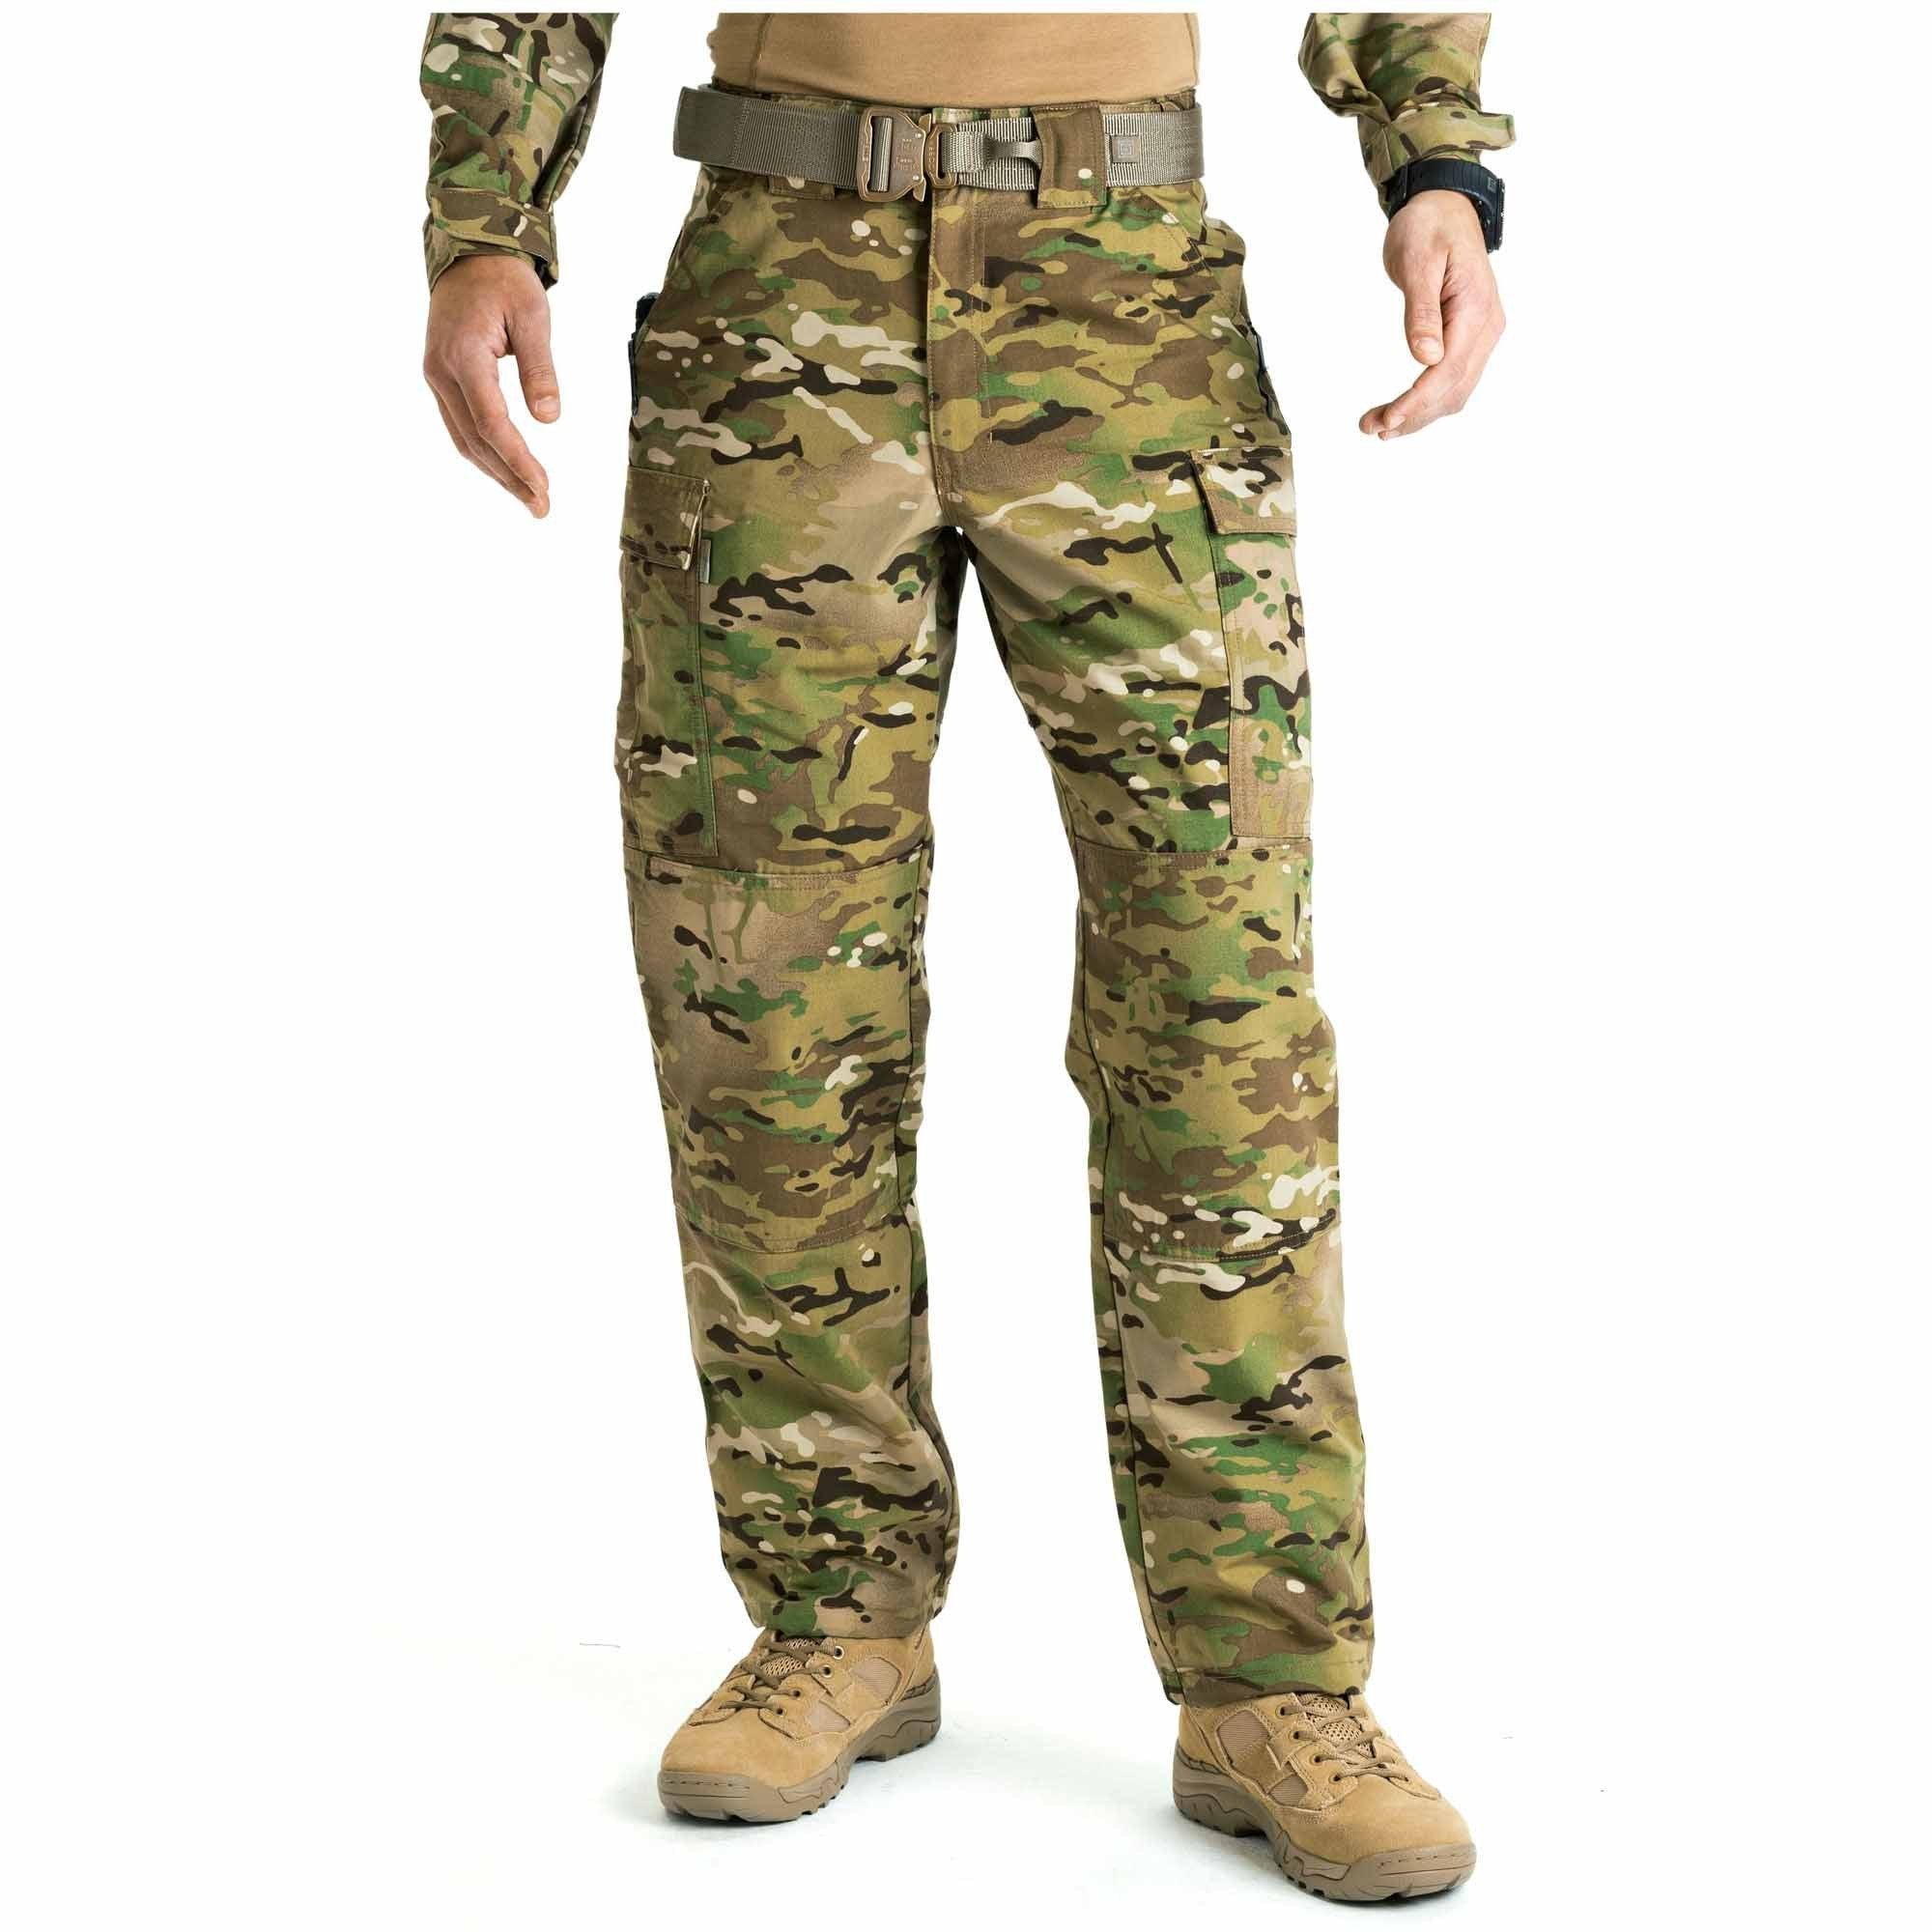 5.11 Tactical MultiCam TDU Pants Pants 5.11 Tactical Small Short Tactical Gear Supplier Tactical Distributors Australia